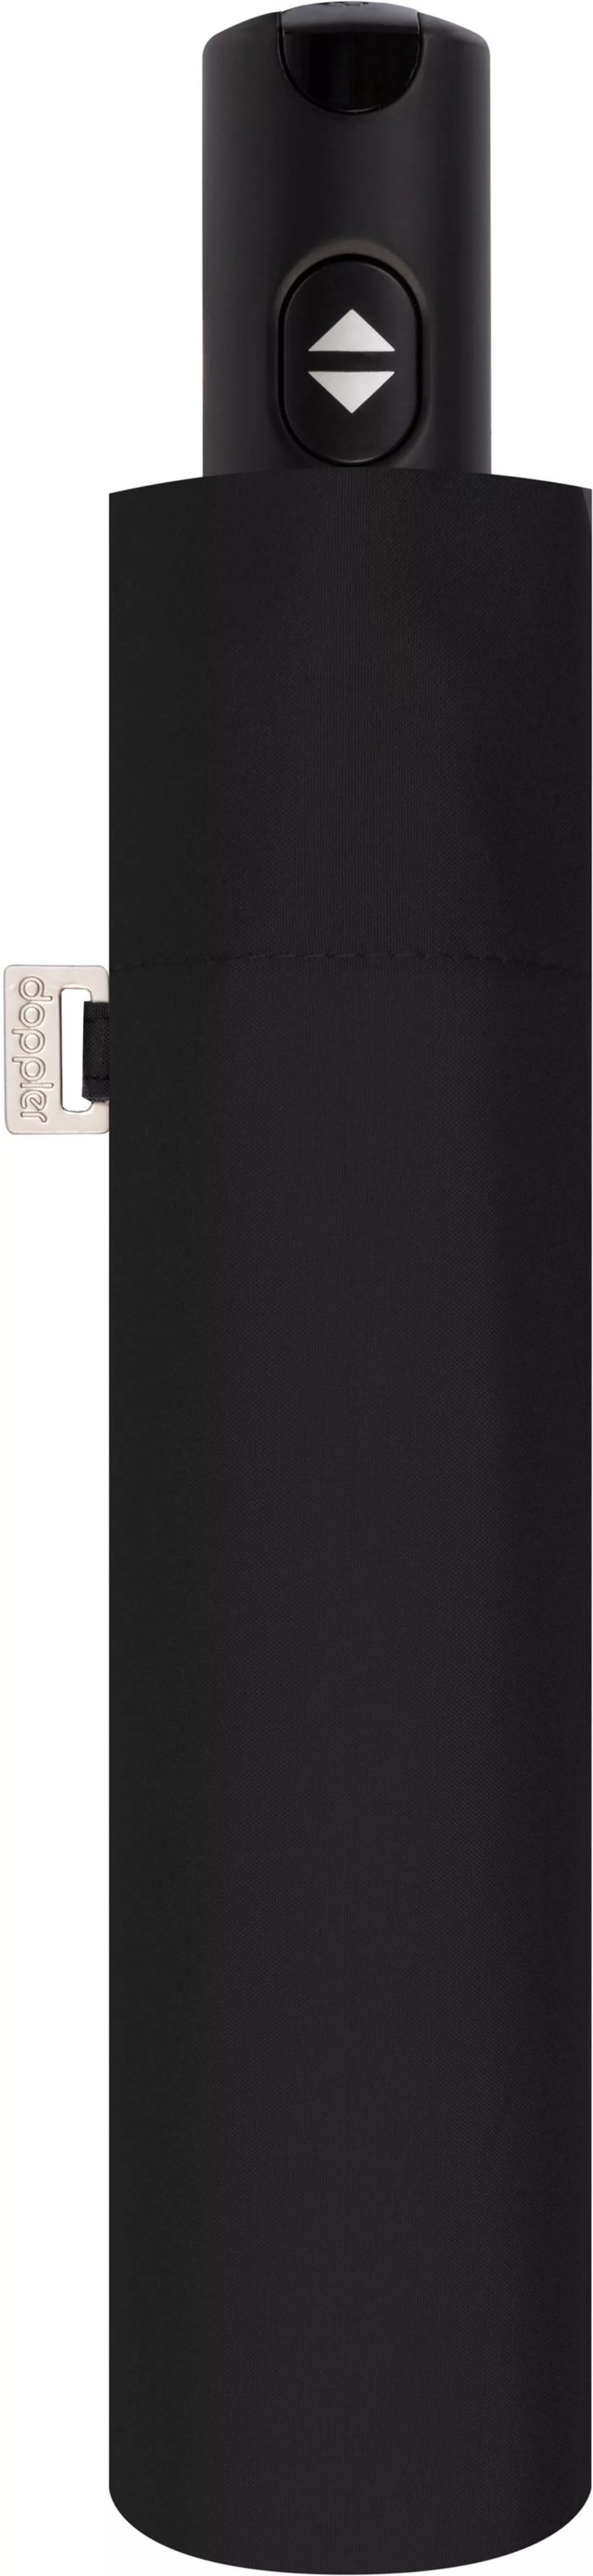 doppler Taschenregenschirm "Carbonsteel Magic Uni, Black" günstig online kaufen